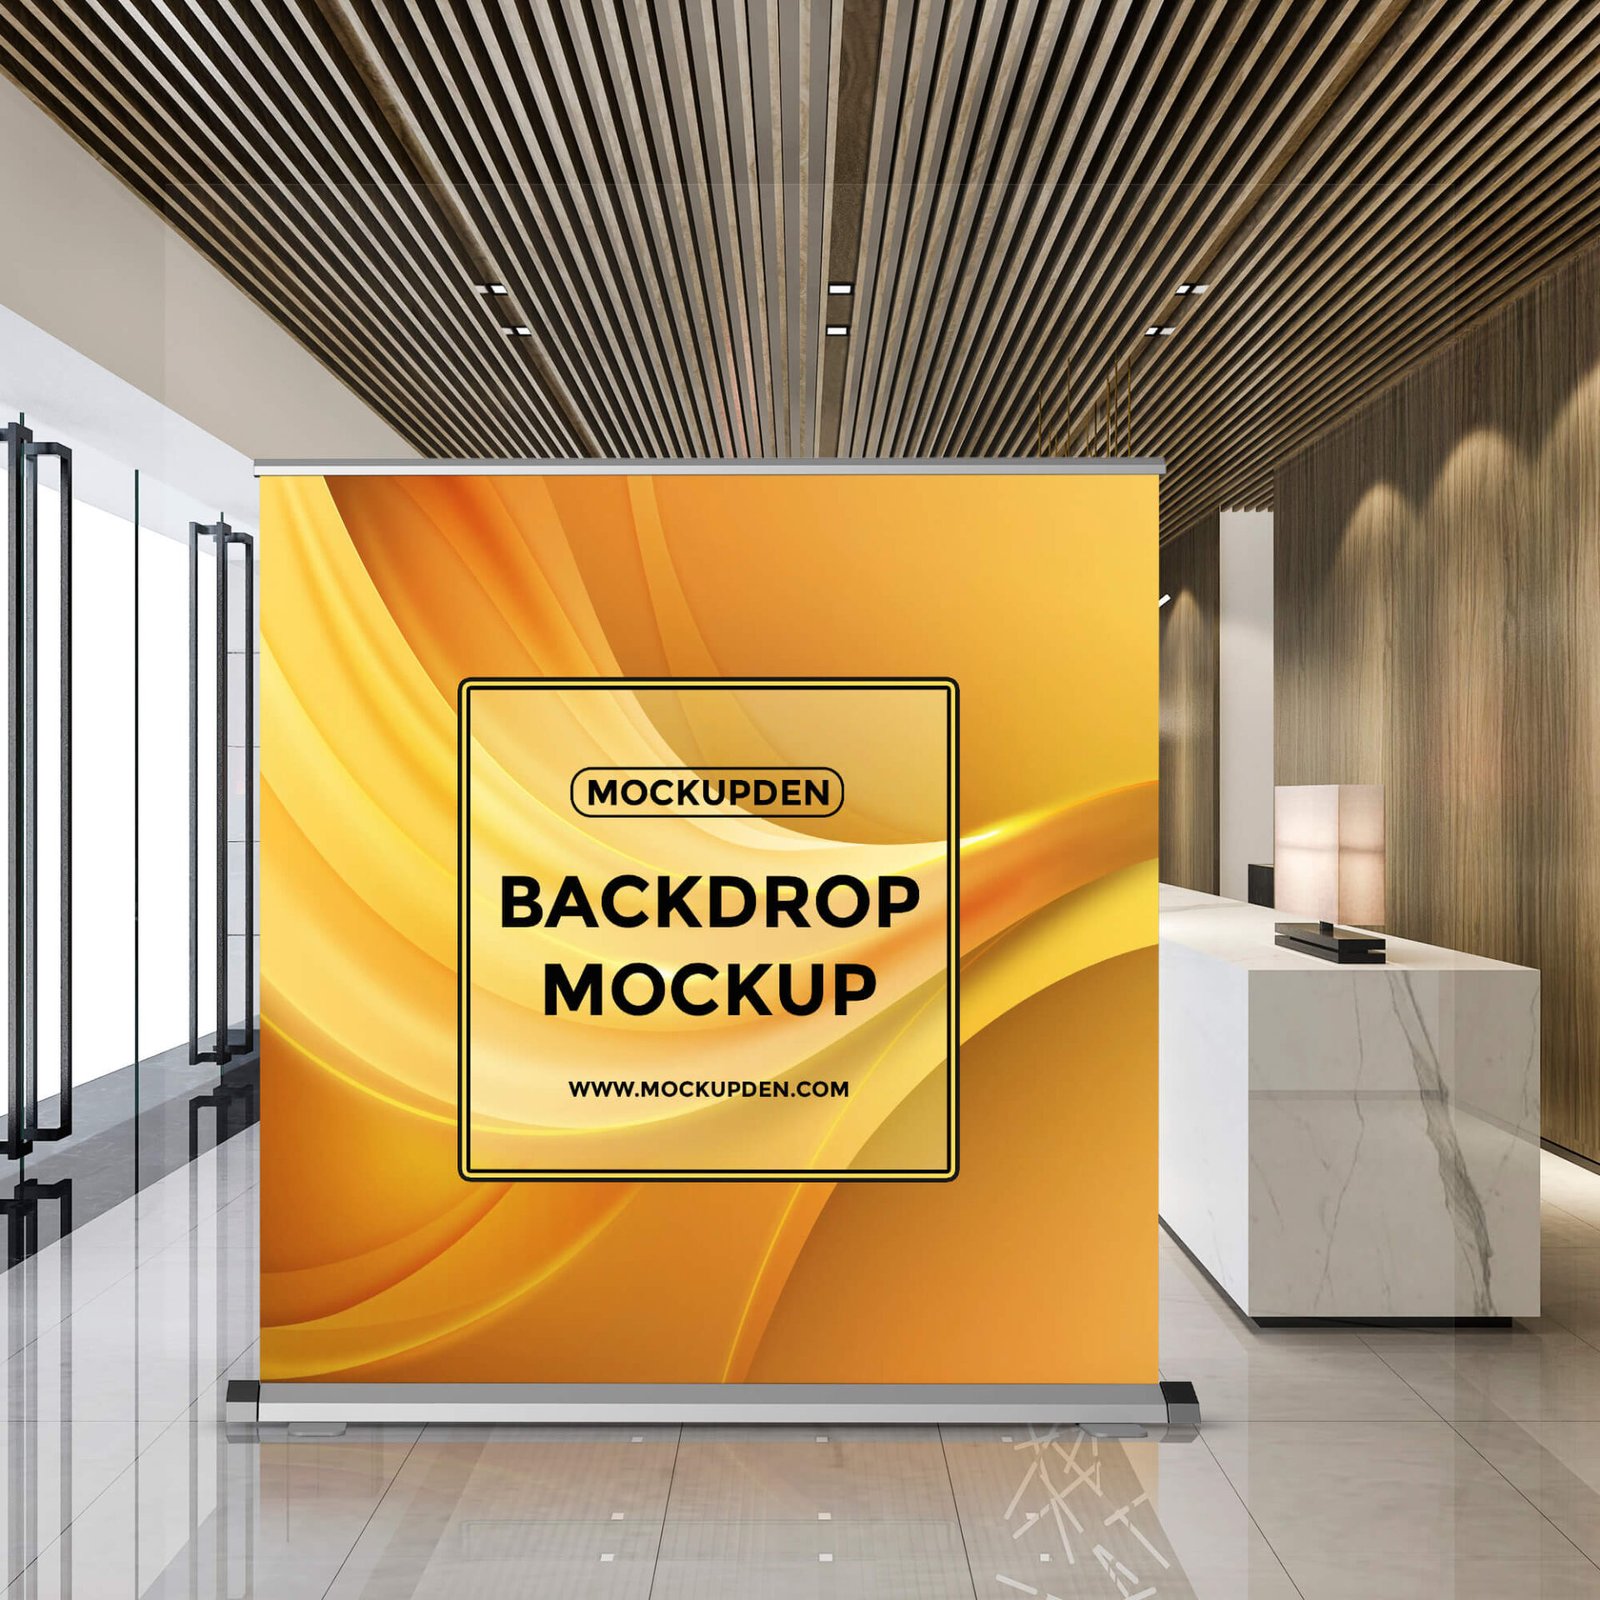 15 Best Backdrop Mockup PSD Templates Indoor Outdoor